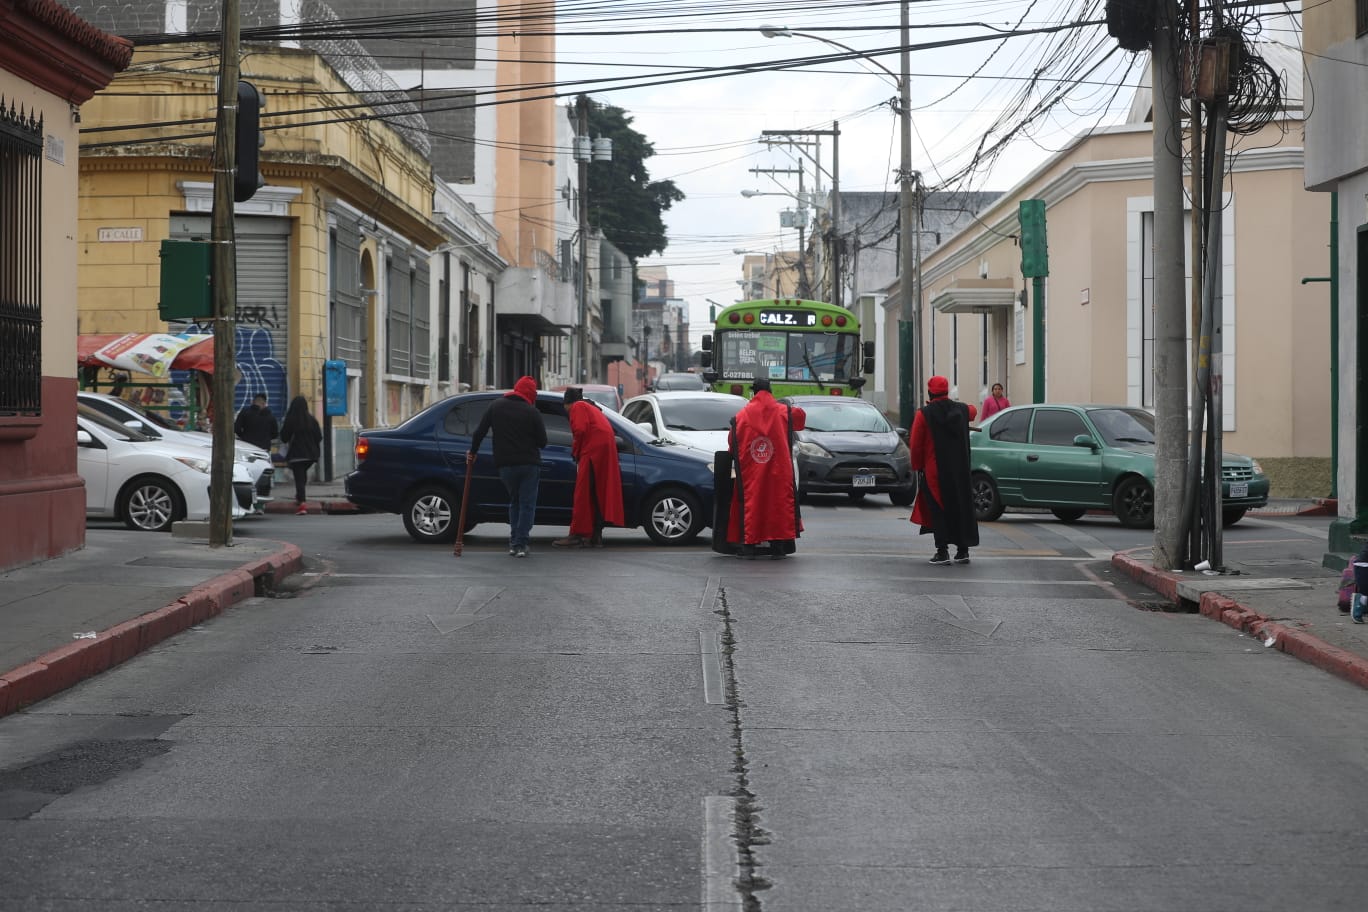 Encapuchados participan en el desfile de la Huelga de Dolores este viernes 31 de marzo. (Foto Prensa Libre: J. D. González)